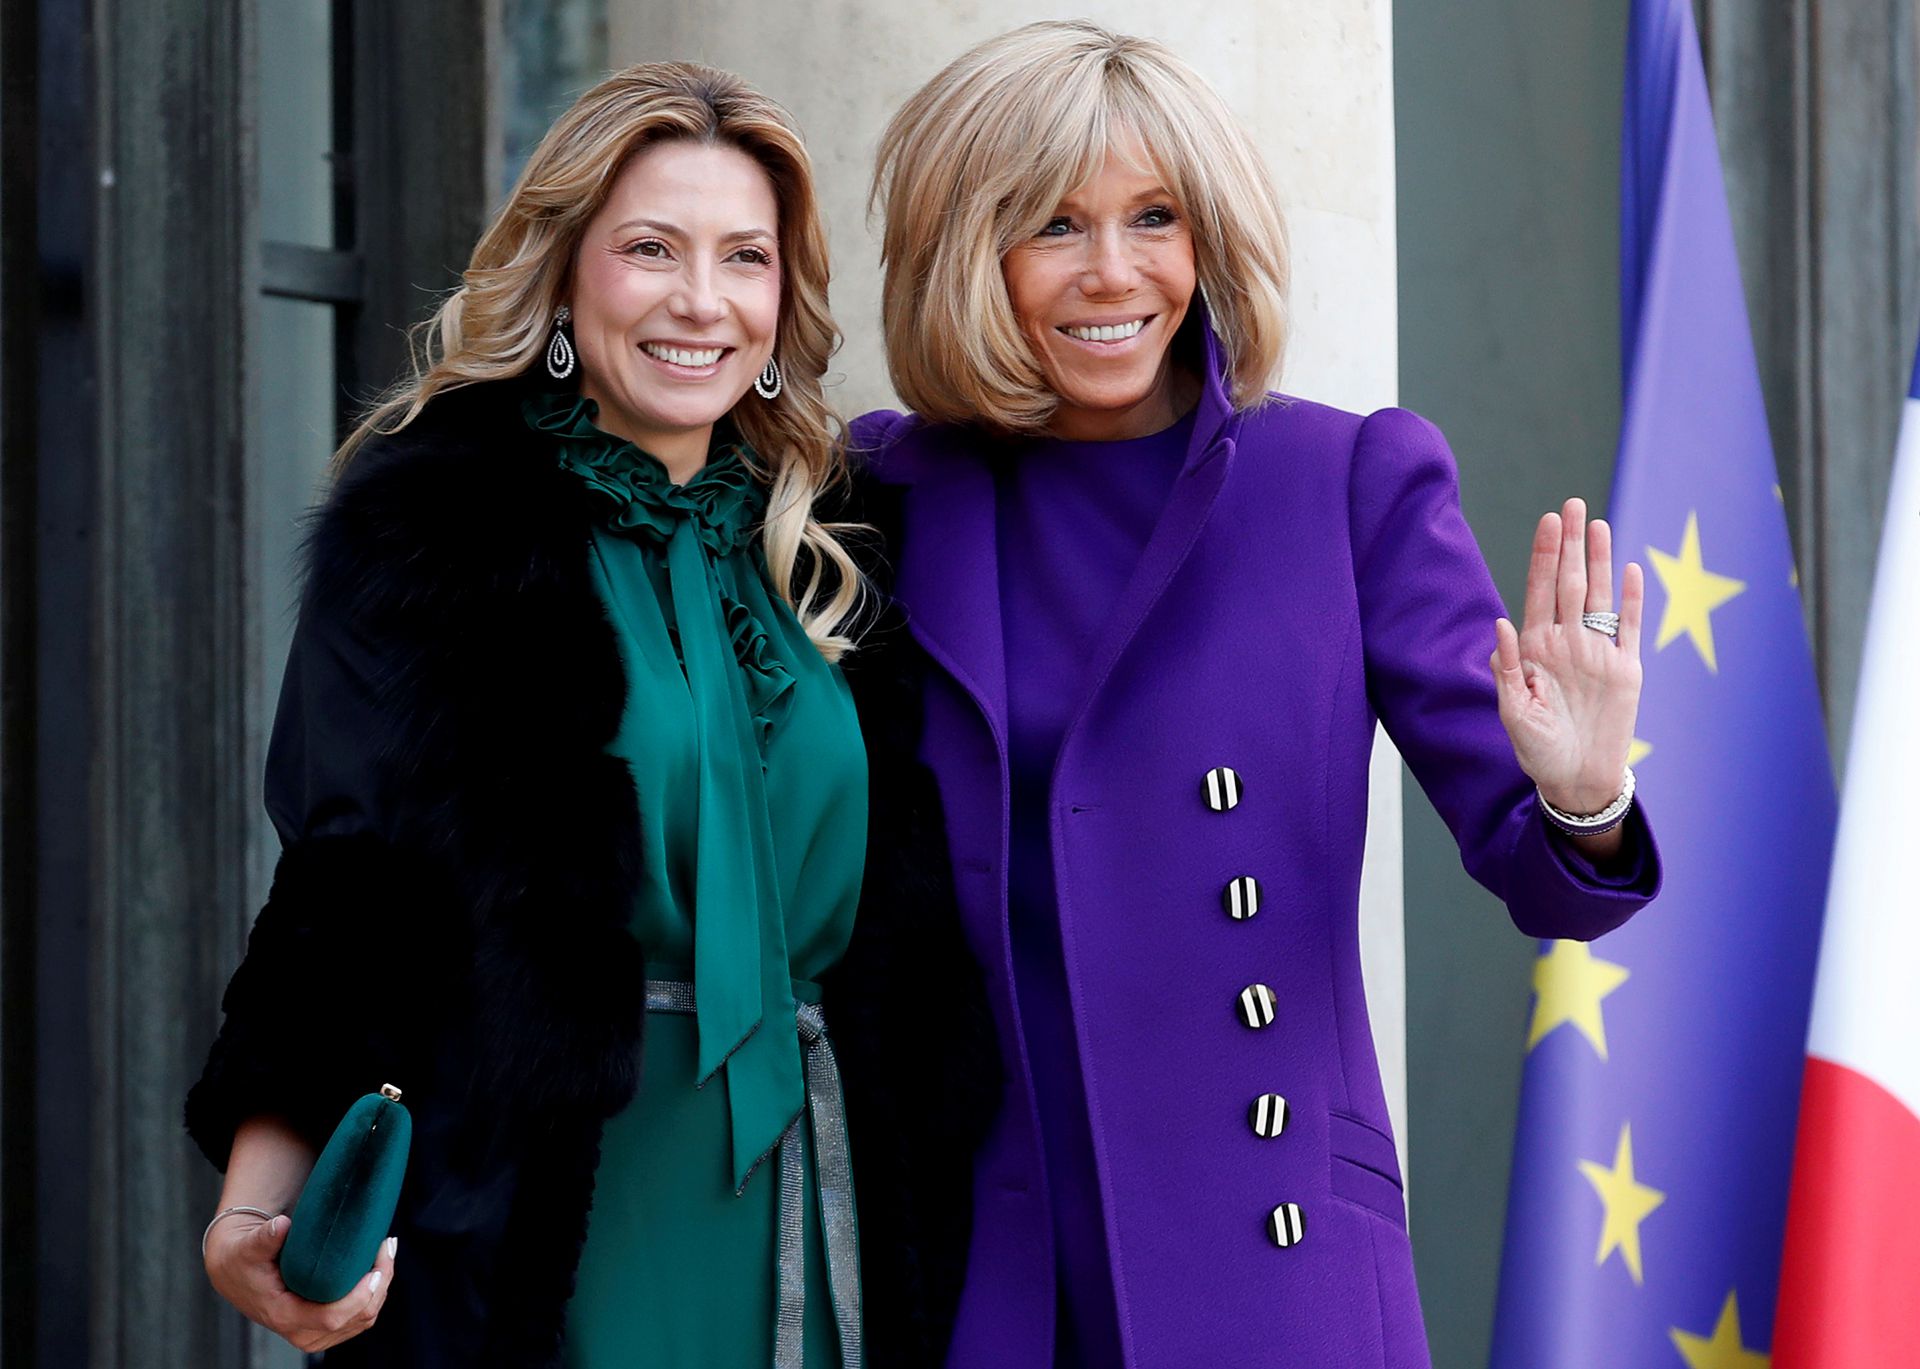 Fabiola Yáñez y Brigitte Macron en el Palacio del Elíseo, ambas muy personales y con colores que serán tendencia en este invierno